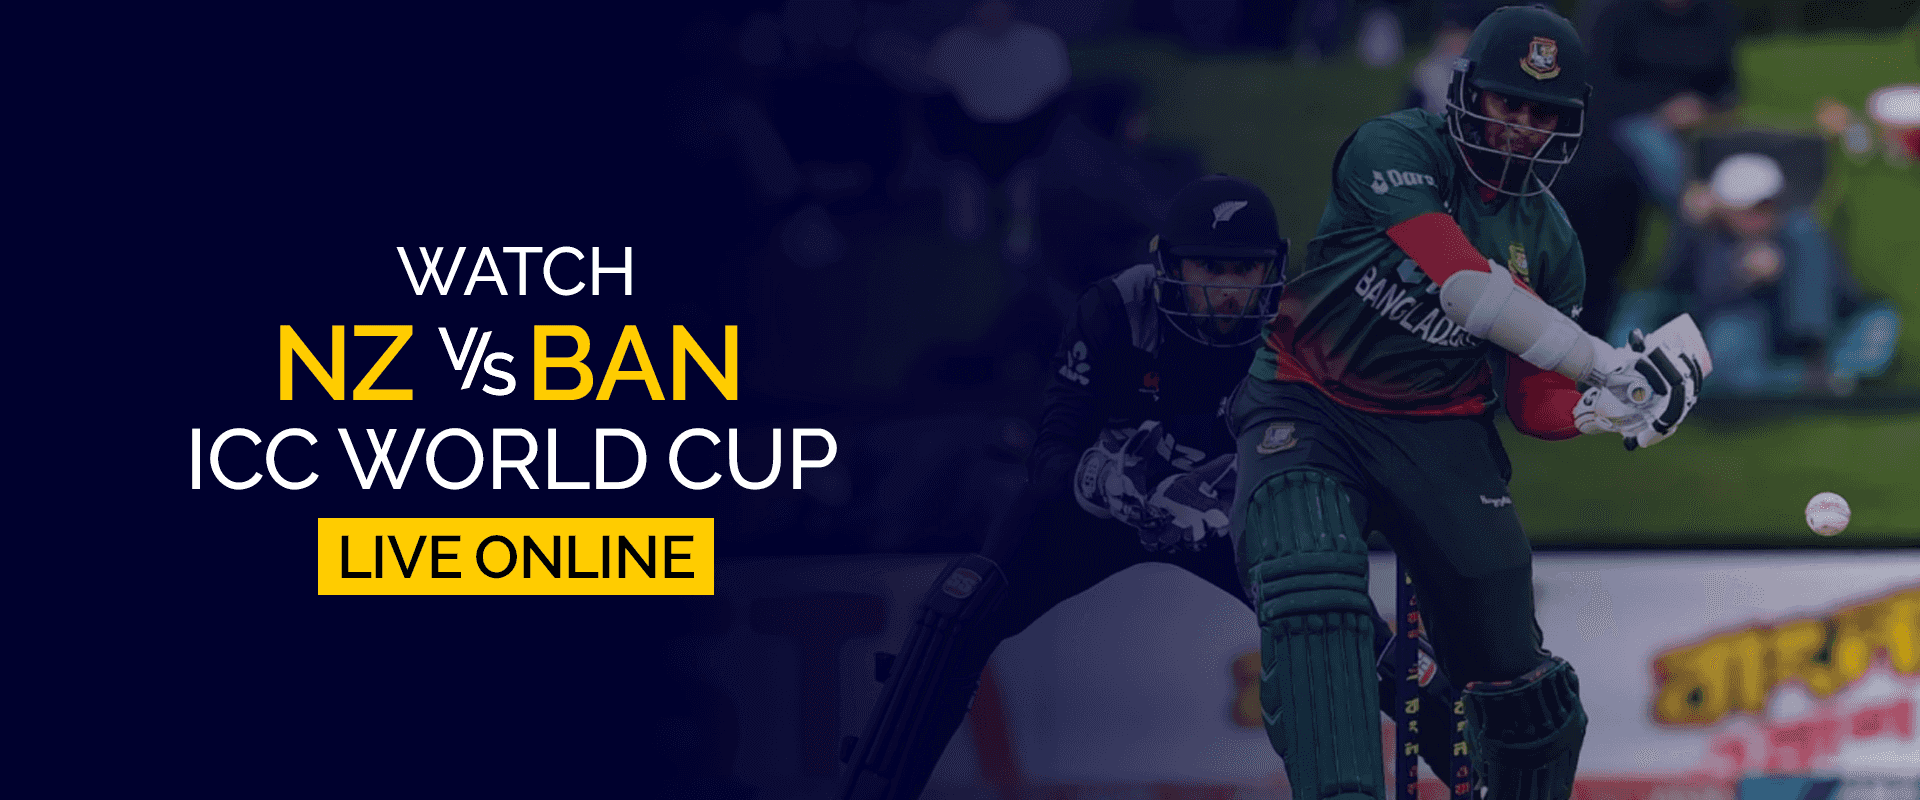 مشاهدة مباراة NZ vs BAN ICC كأس العالم مباشرة على الإنترنت